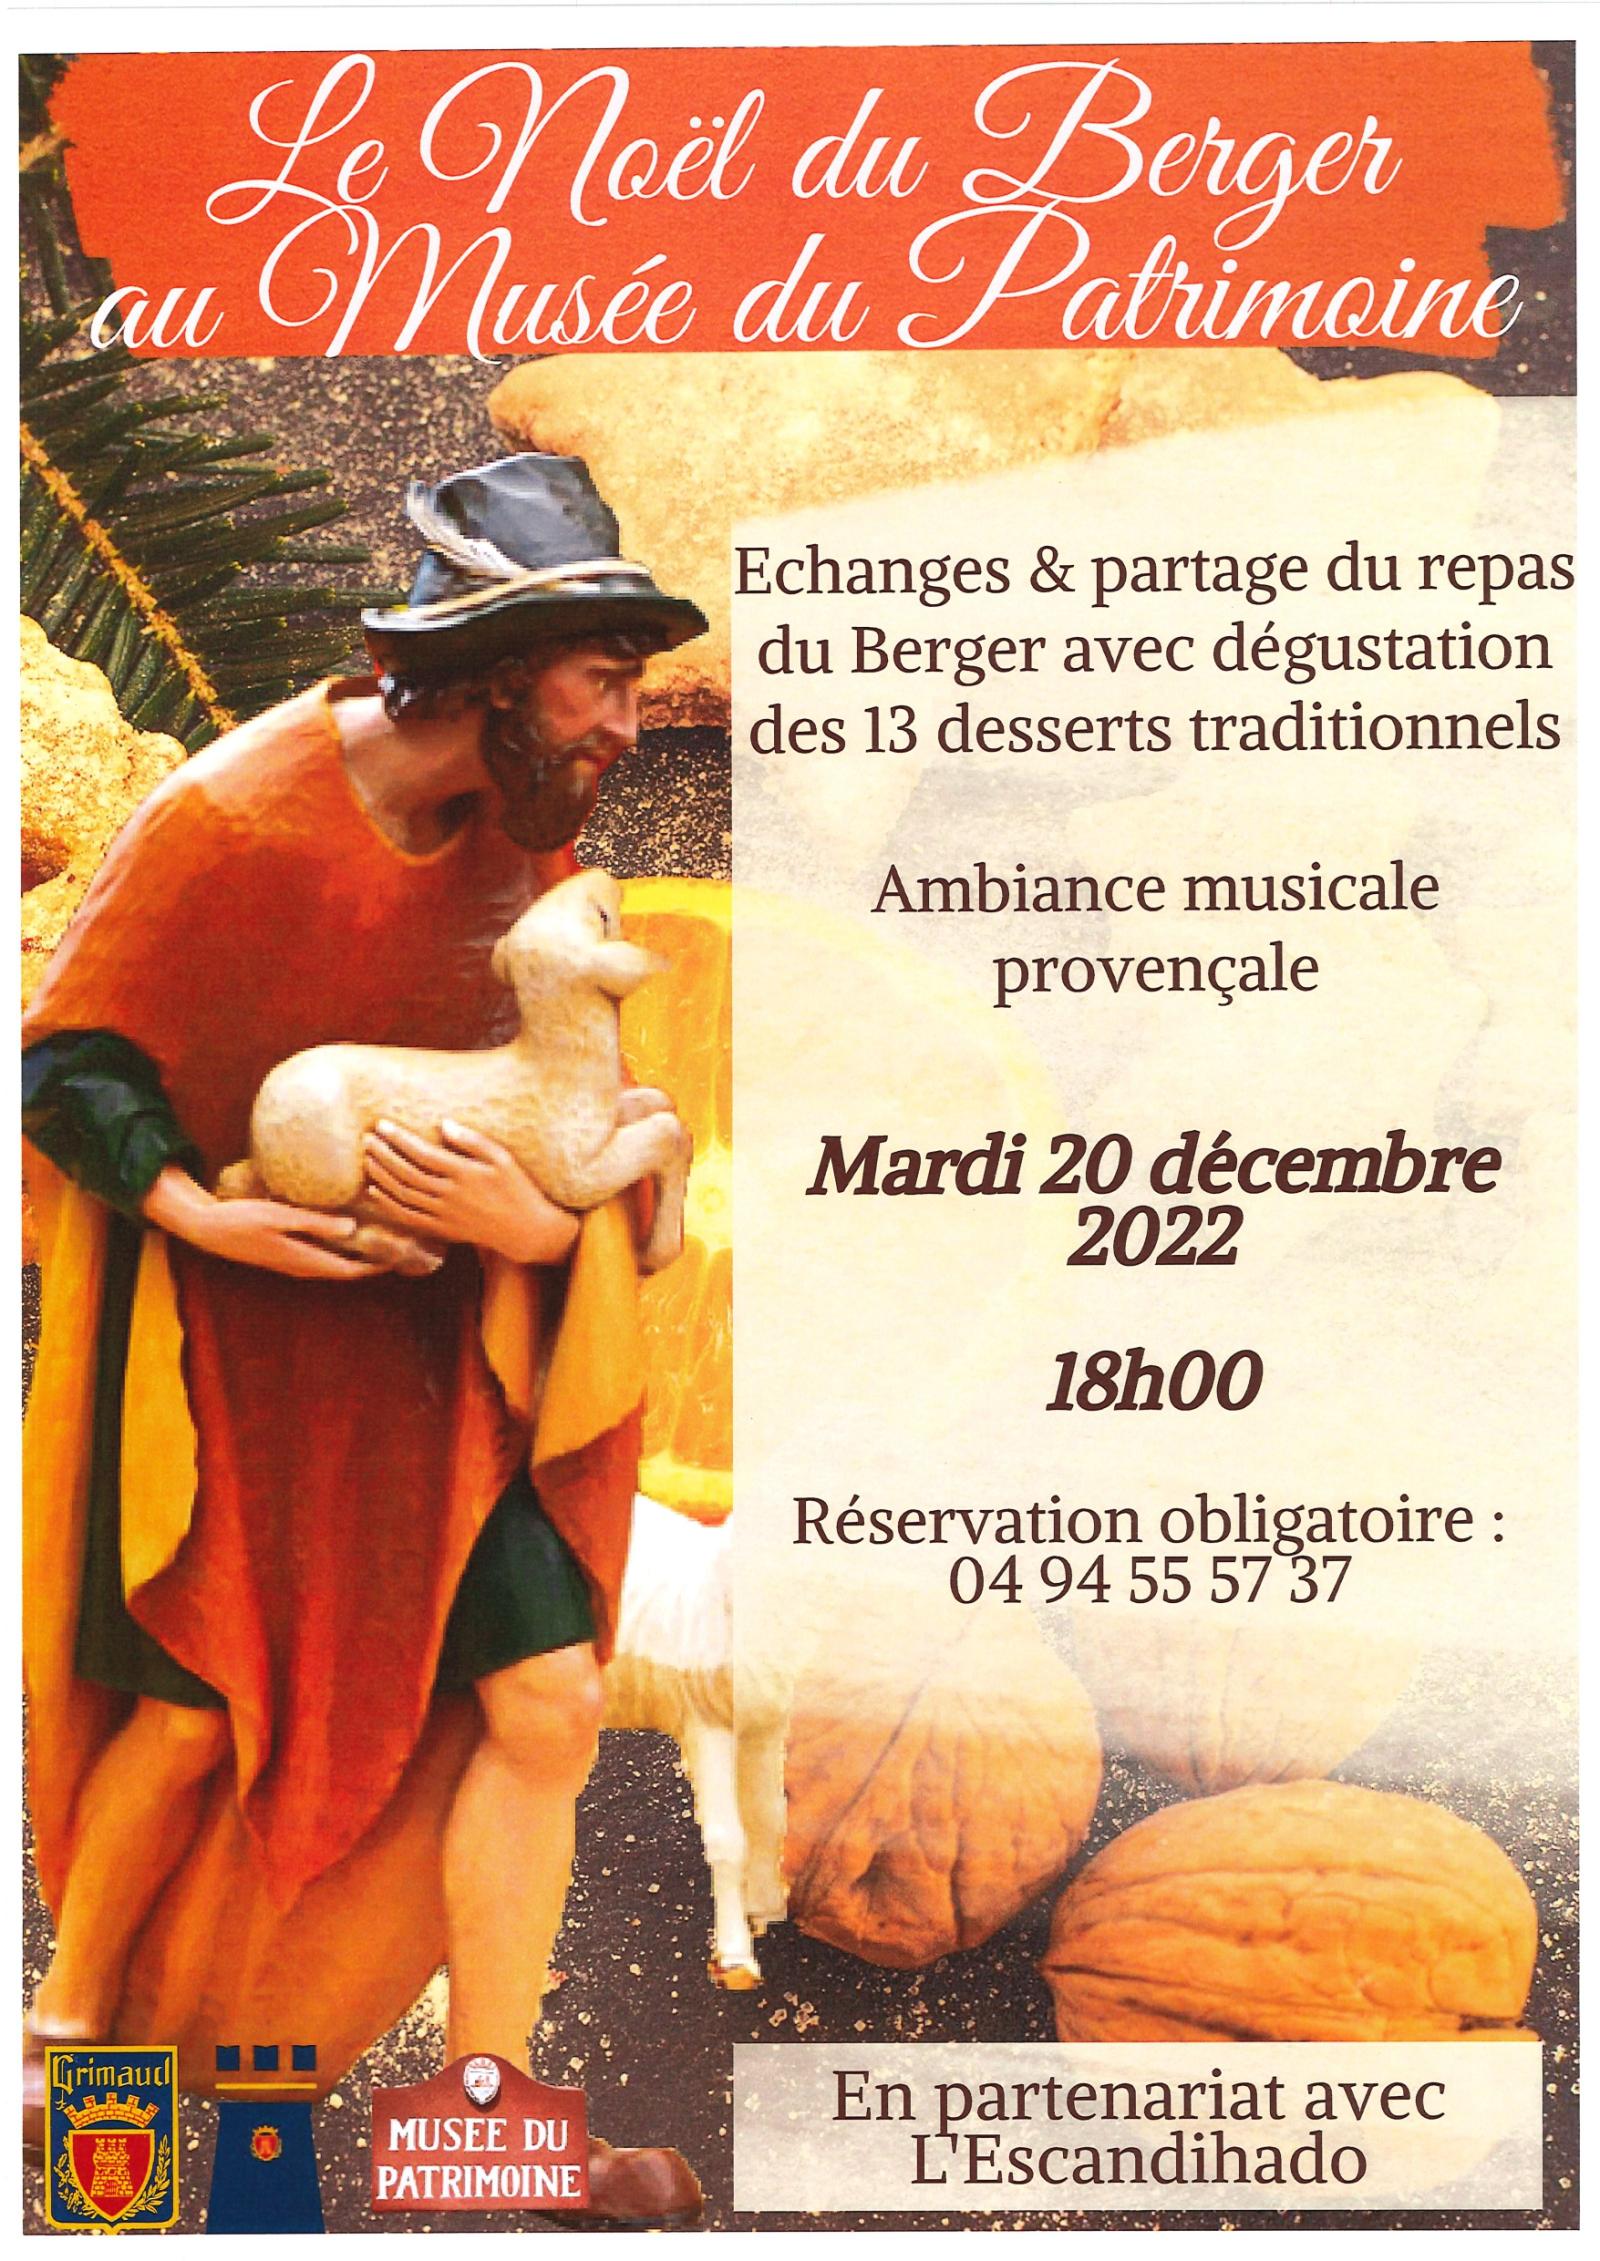 Mardi 20 décembre 2022 : Le Noël du berger au musée